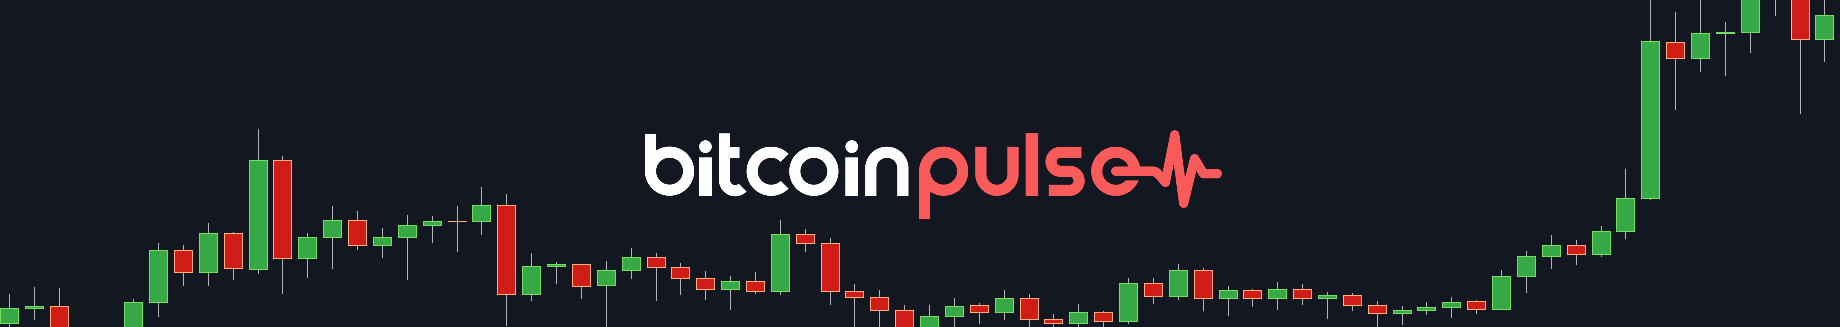 Bitcoin Pulse #101